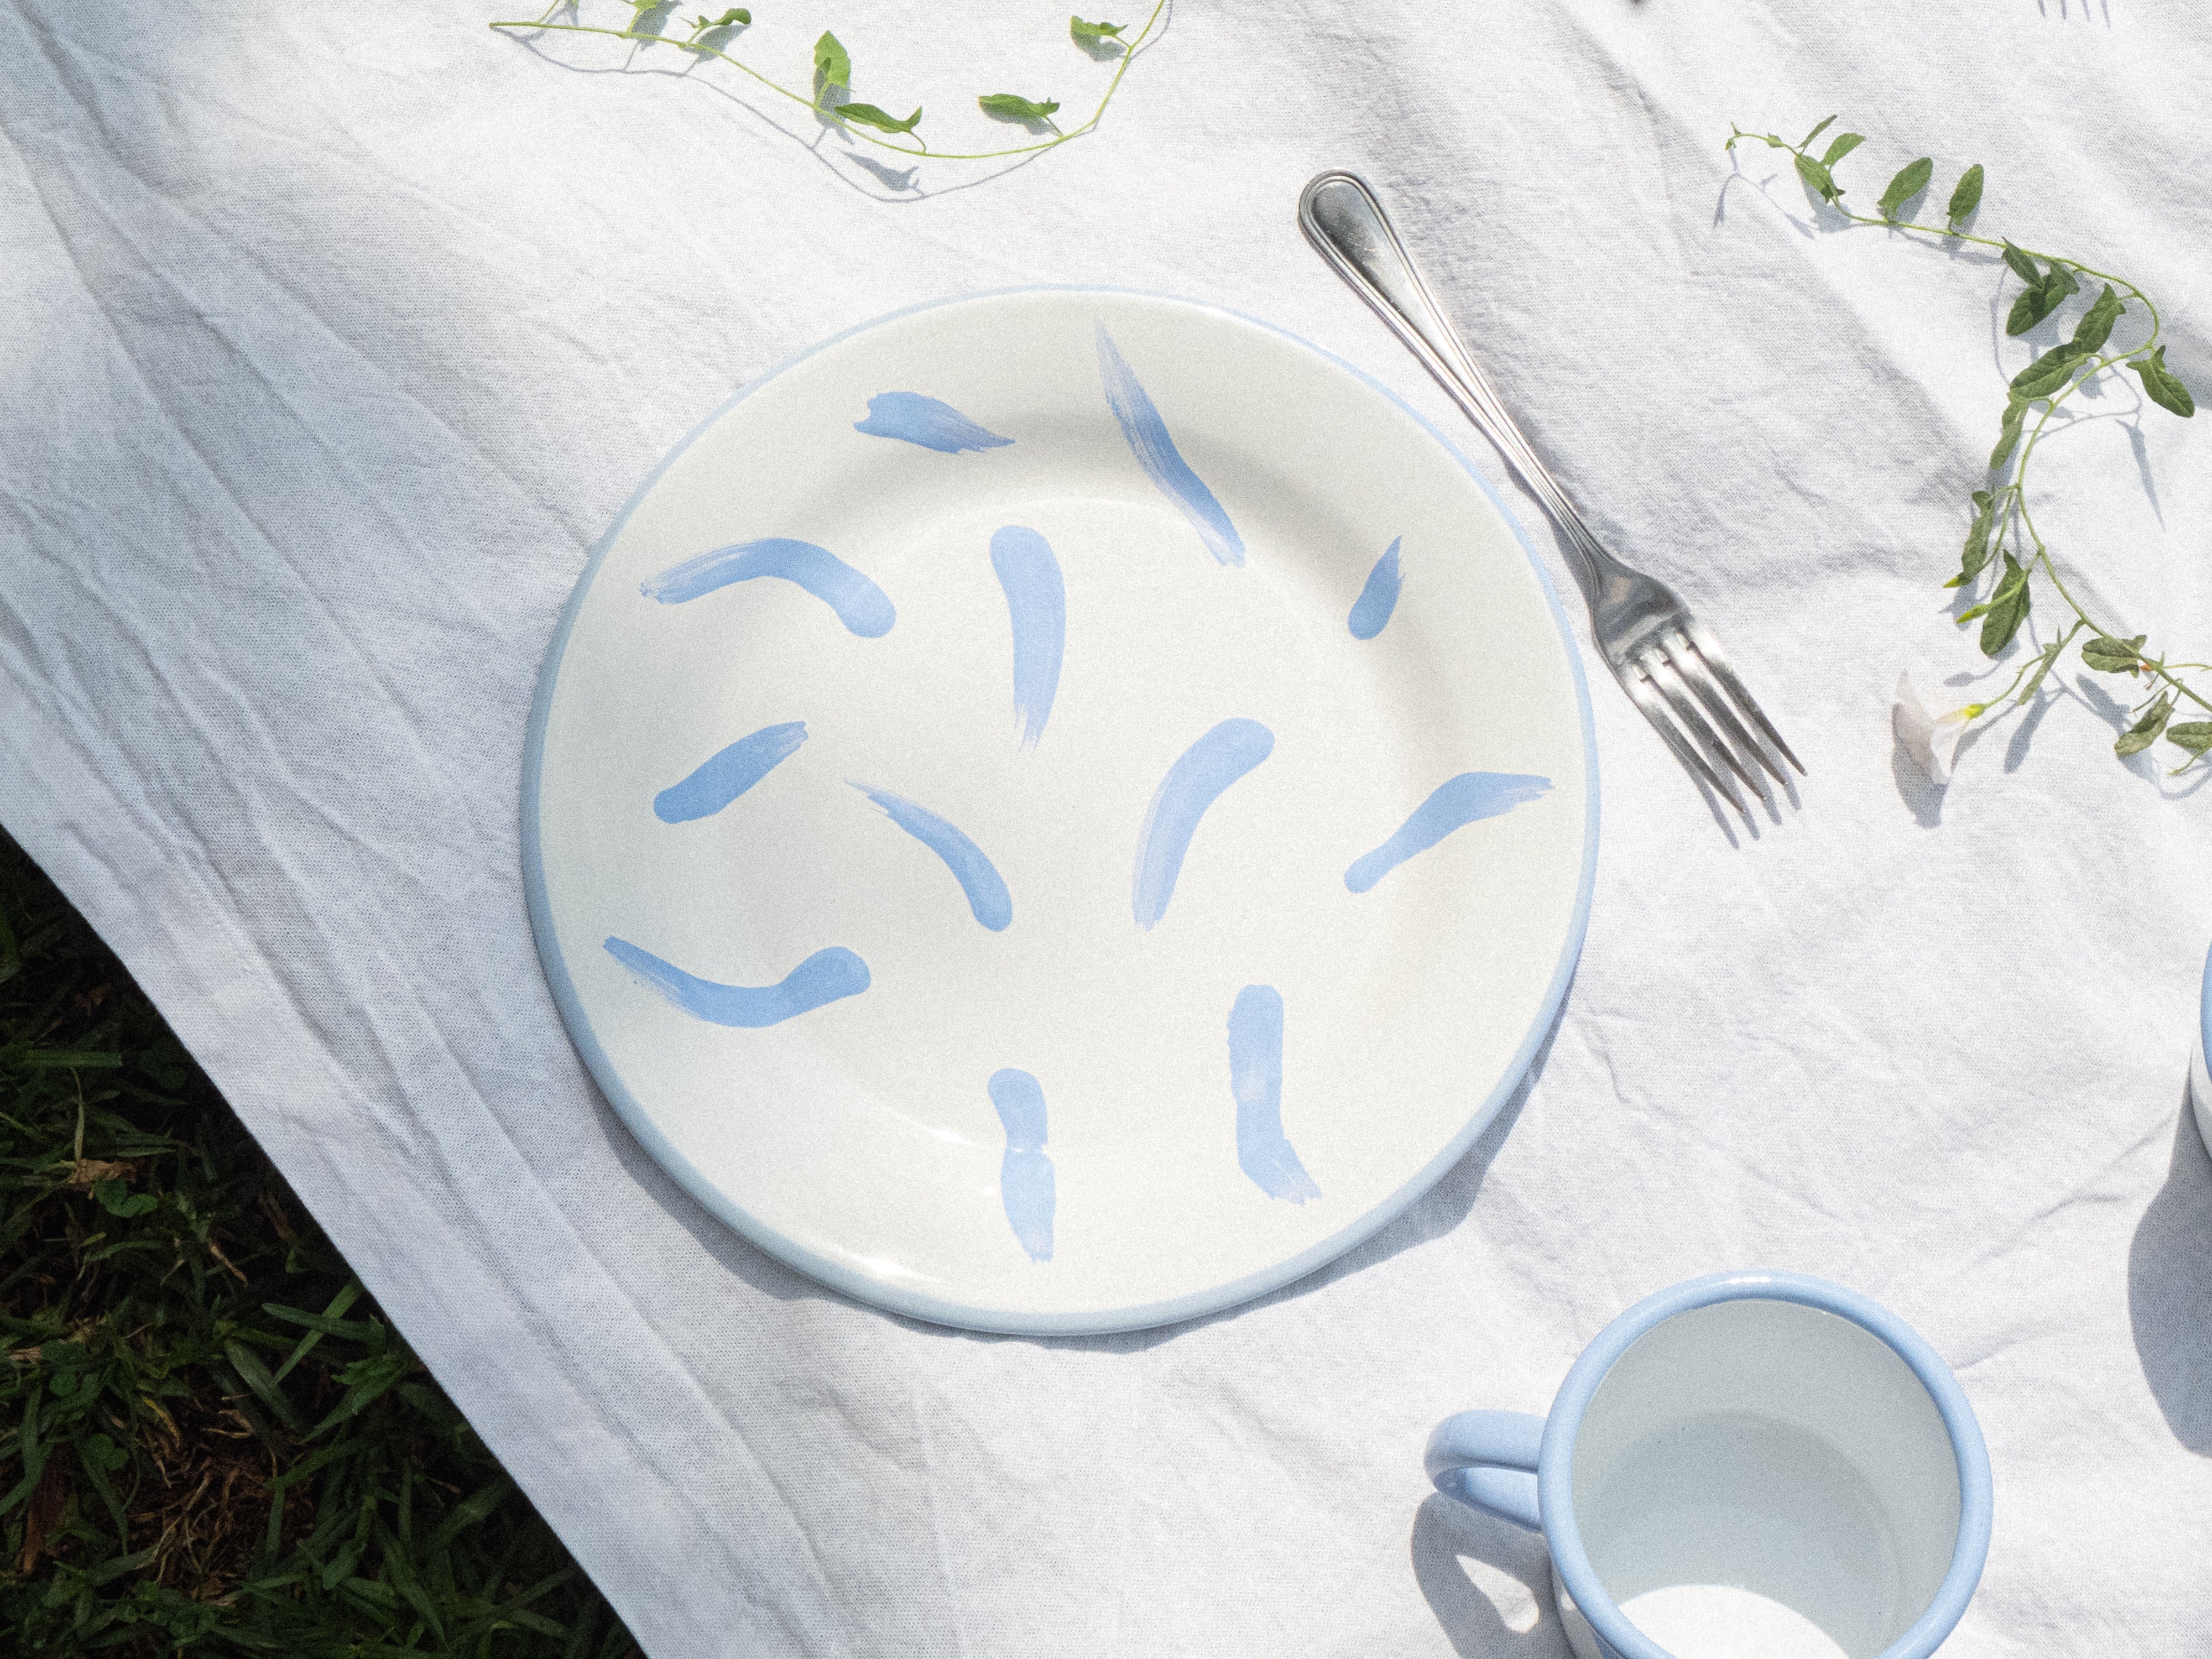 Assiette plate en émail, fabriquée et peinte à la maiN. Couleurs blanc et lila, avec des motifs coups de pinceau. Parfaite pour les pique-niques